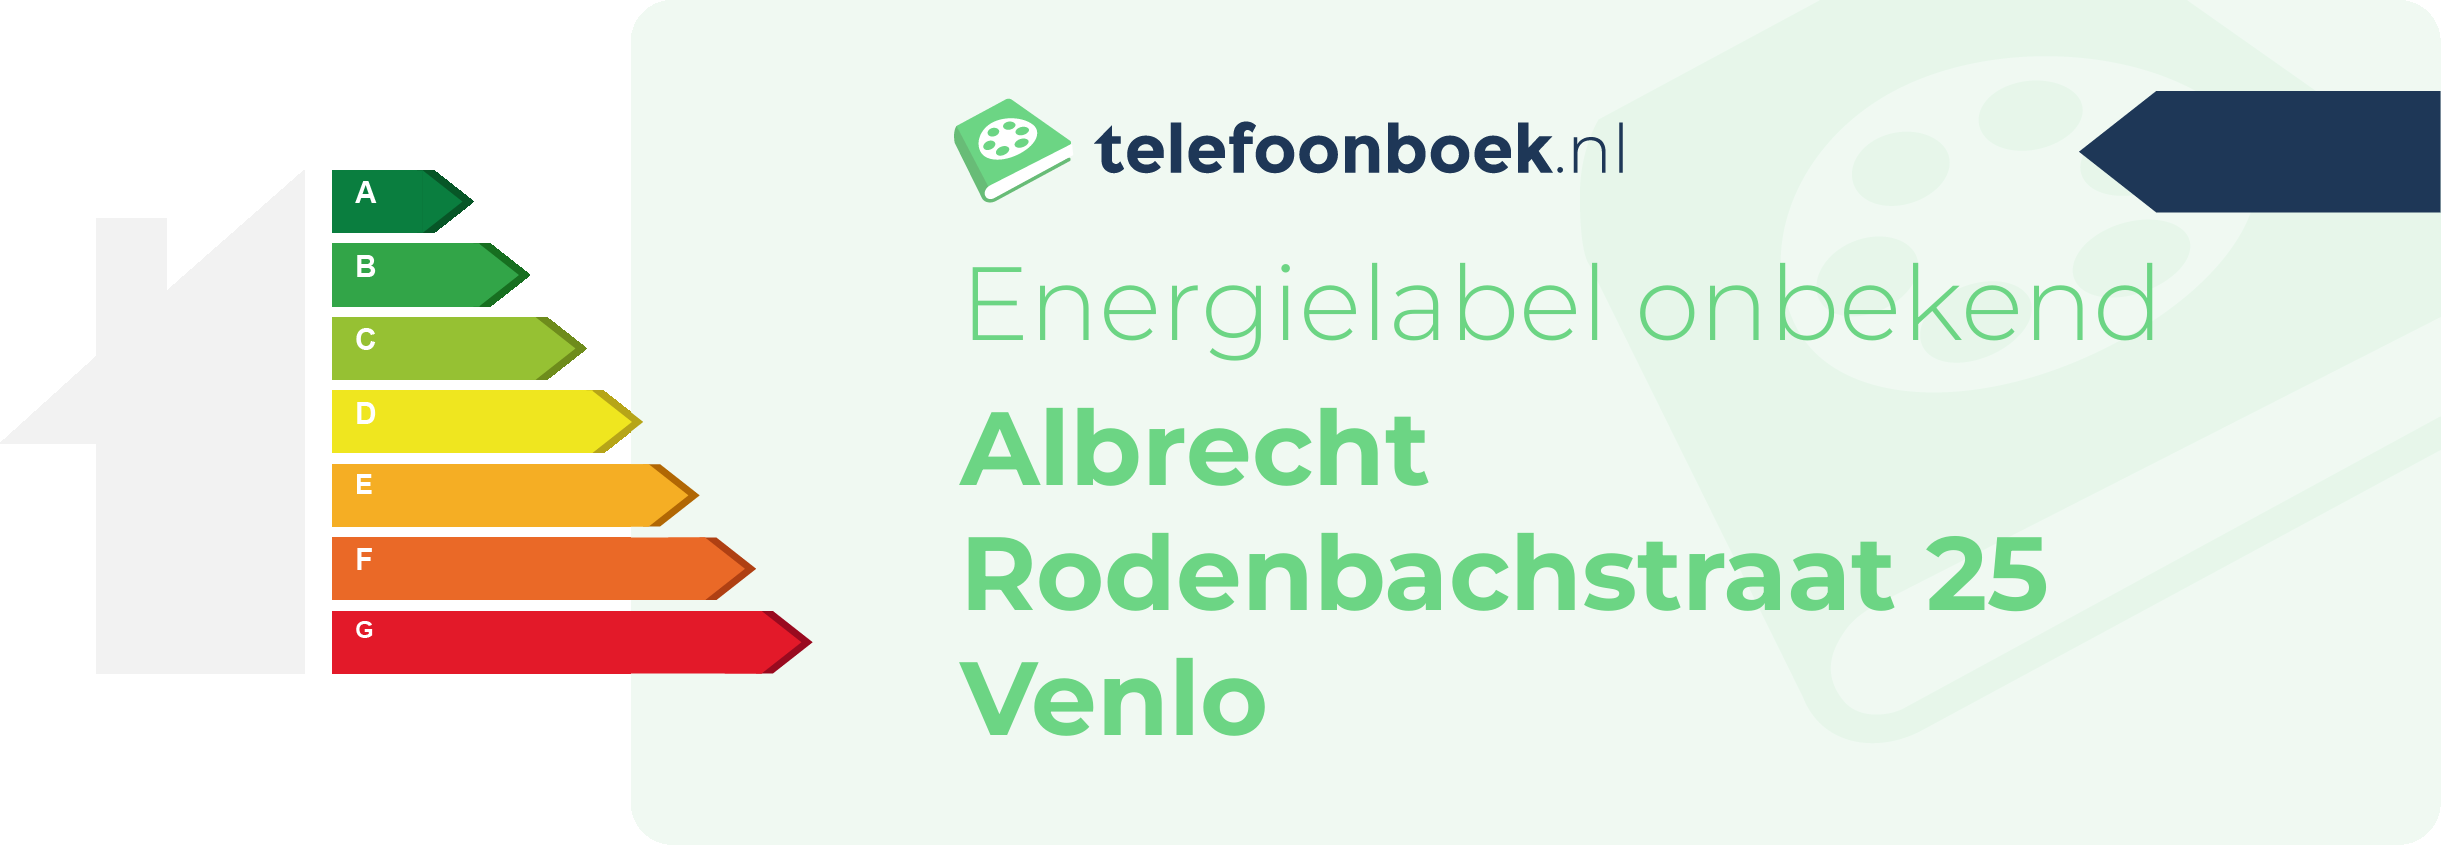 Energielabel Albrecht Rodenbachstraat 25 Venlo